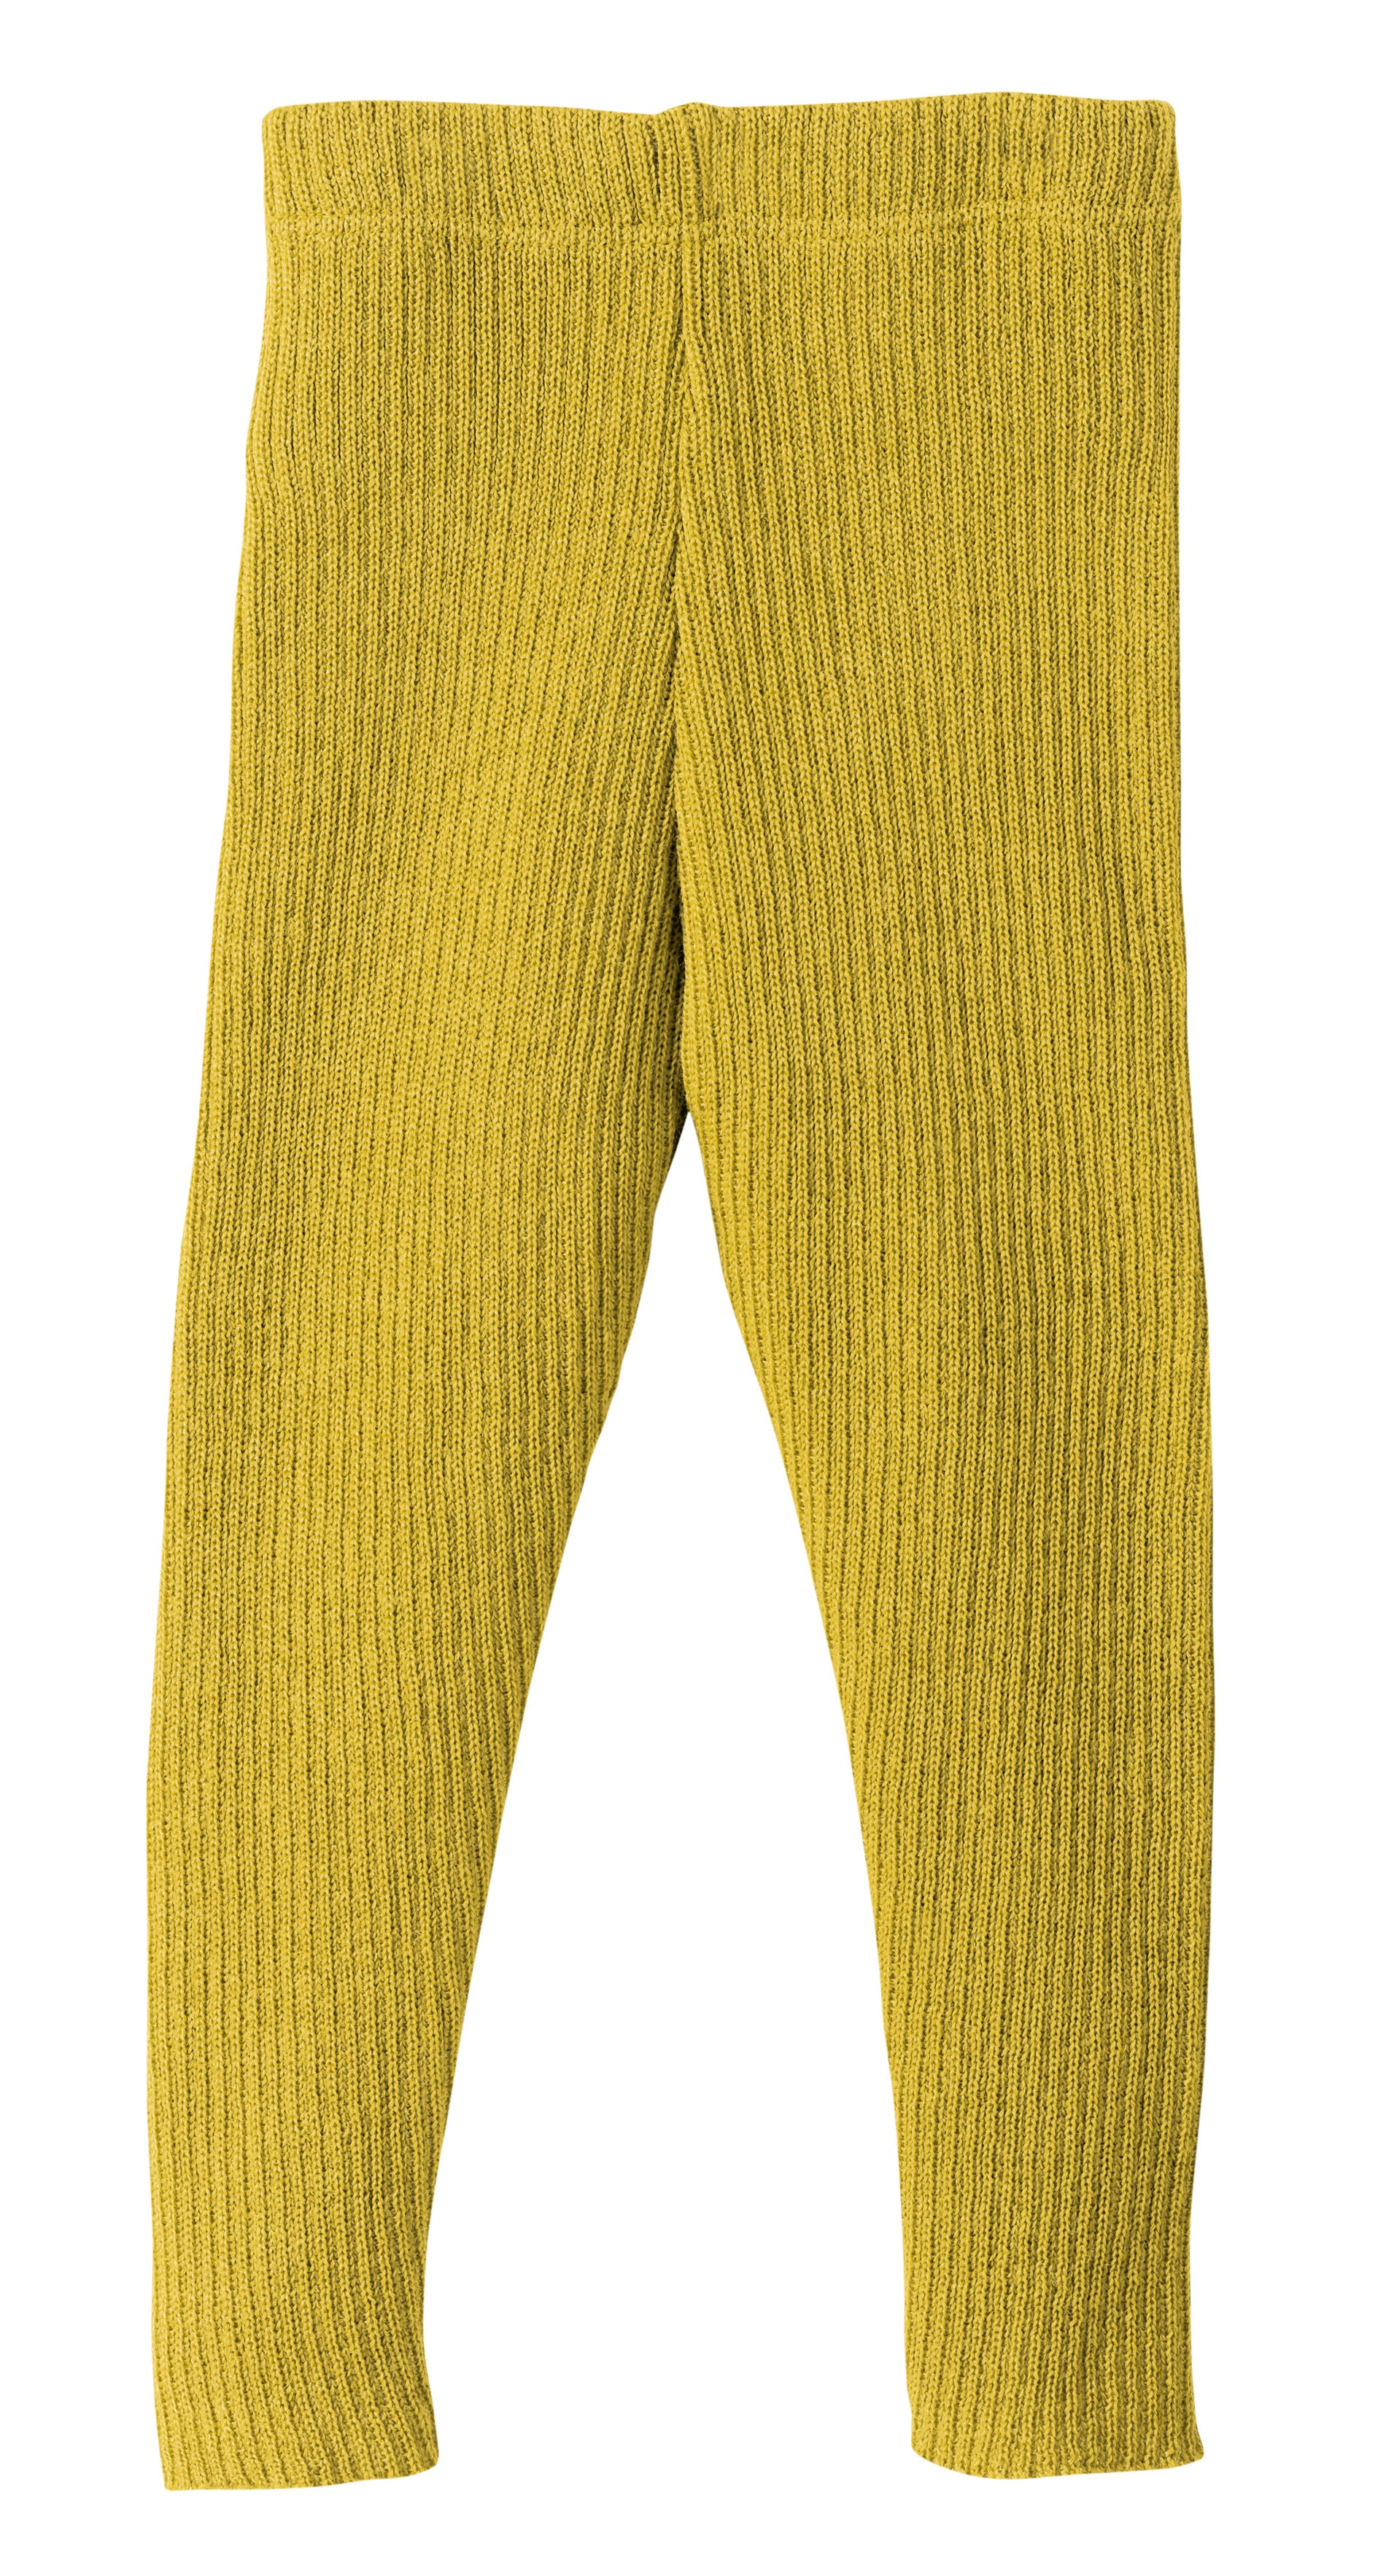 Disana Knitted Wool Leggings Curry Yellow - Leggings Gebreide Wol Mosterd Geel